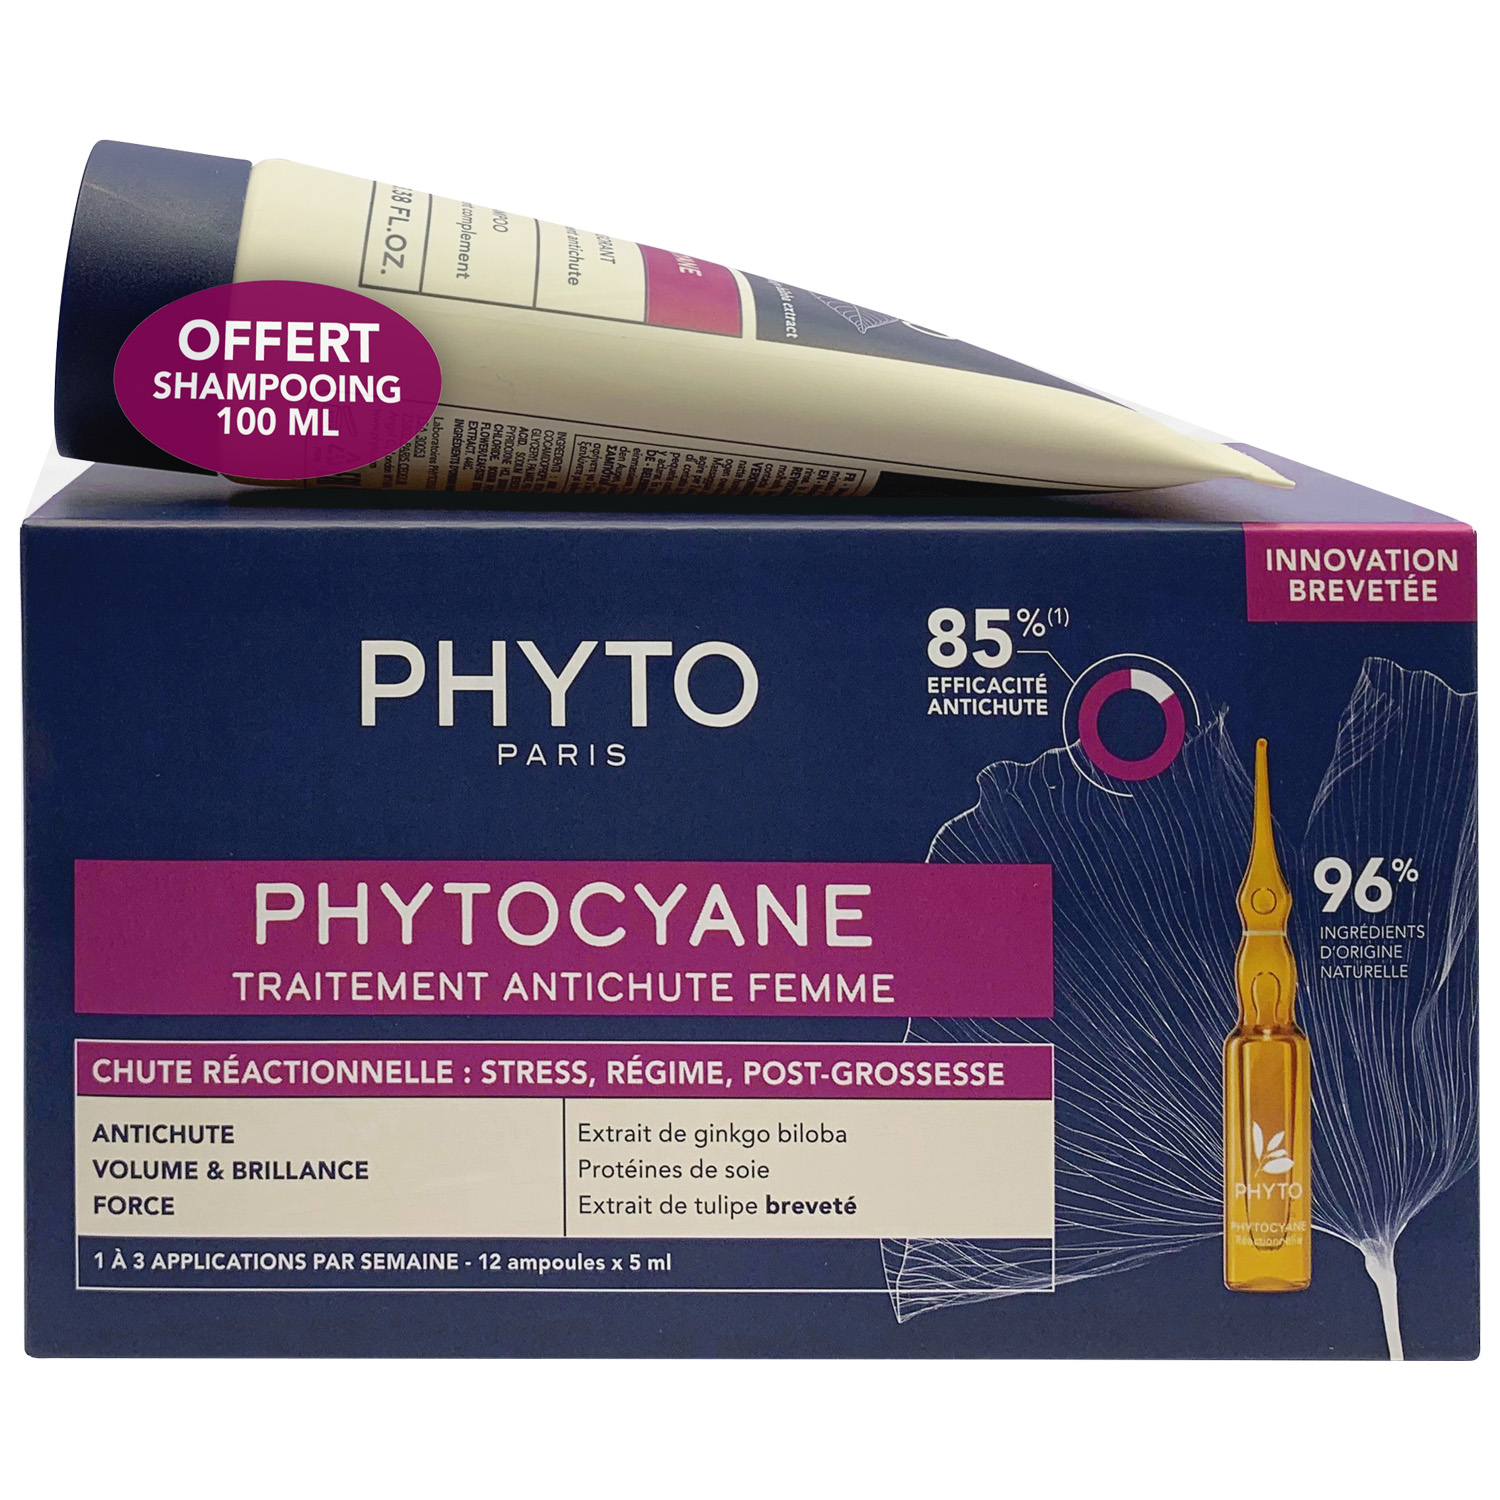 Phyto Набор для женщин: сыворотка от выпадения волос 12x5 мл + укрепляющий шампунь 100 мл (Phyto, Phytocyane) phyto фитоциан укрепляющий шампунь 100 мл